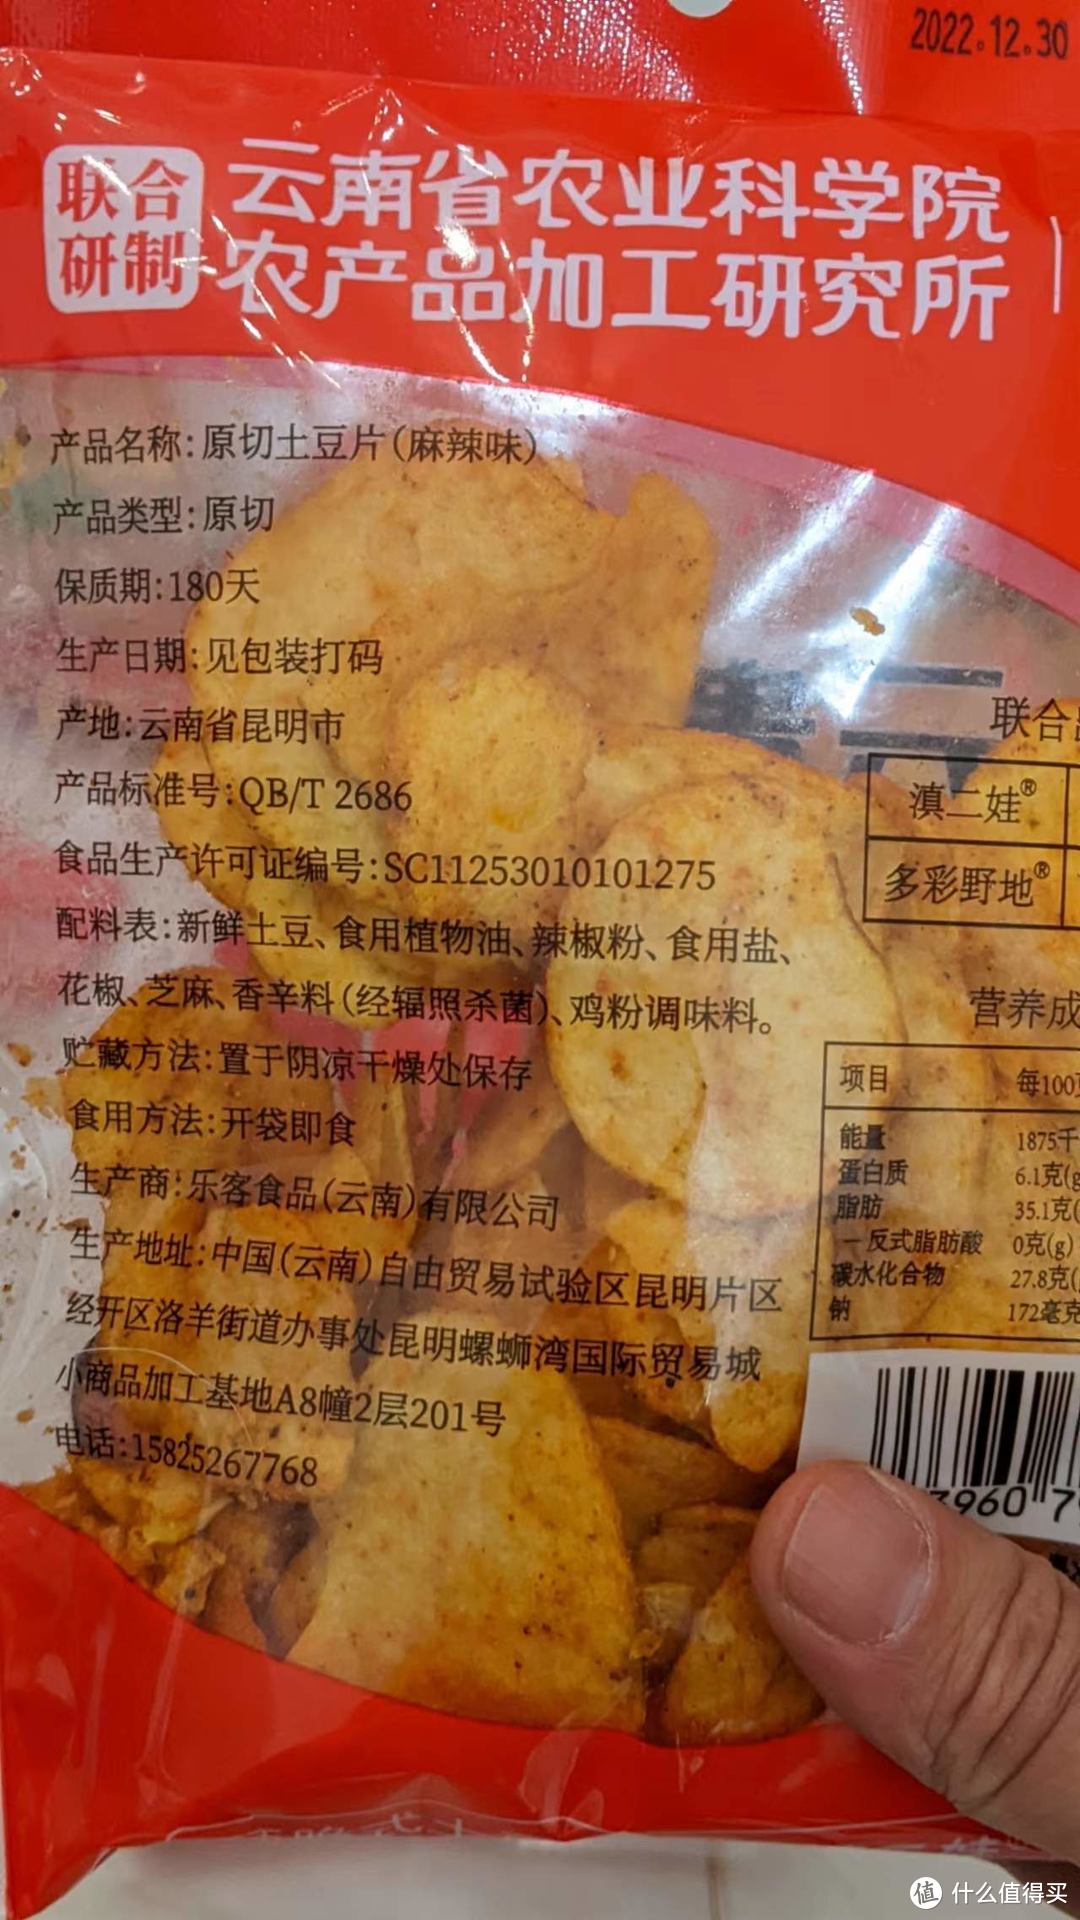 收到了21包值得买的云南农科土豆零食